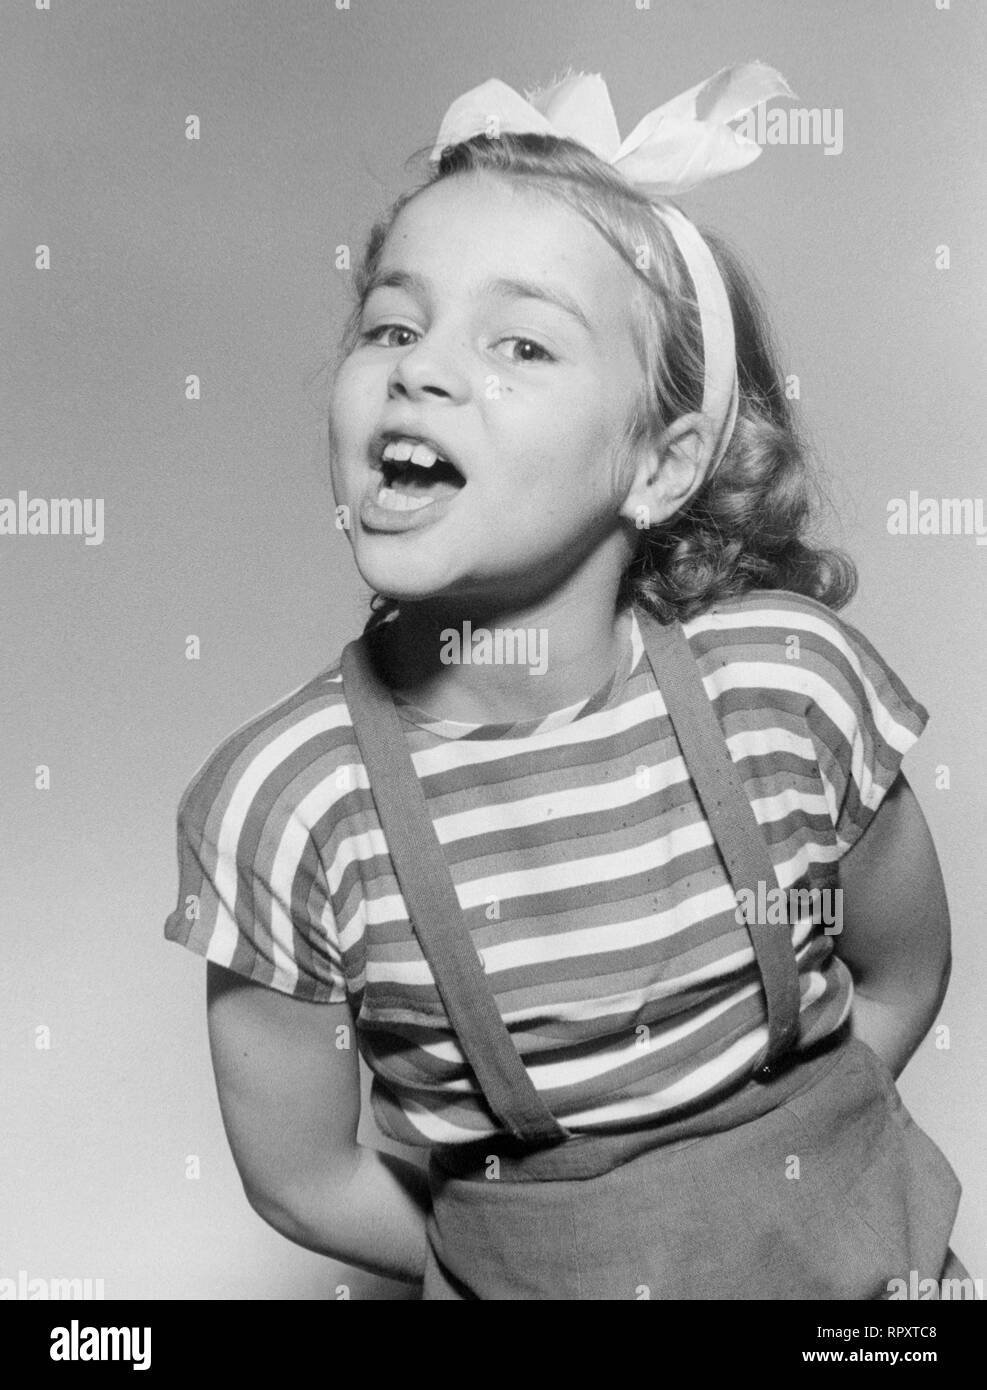 CORNELIA FROBOESS - DIE KLEINE CONNY FROBOESS SINGT: 'Pack die Badehose ein', 1951. Stock Photo